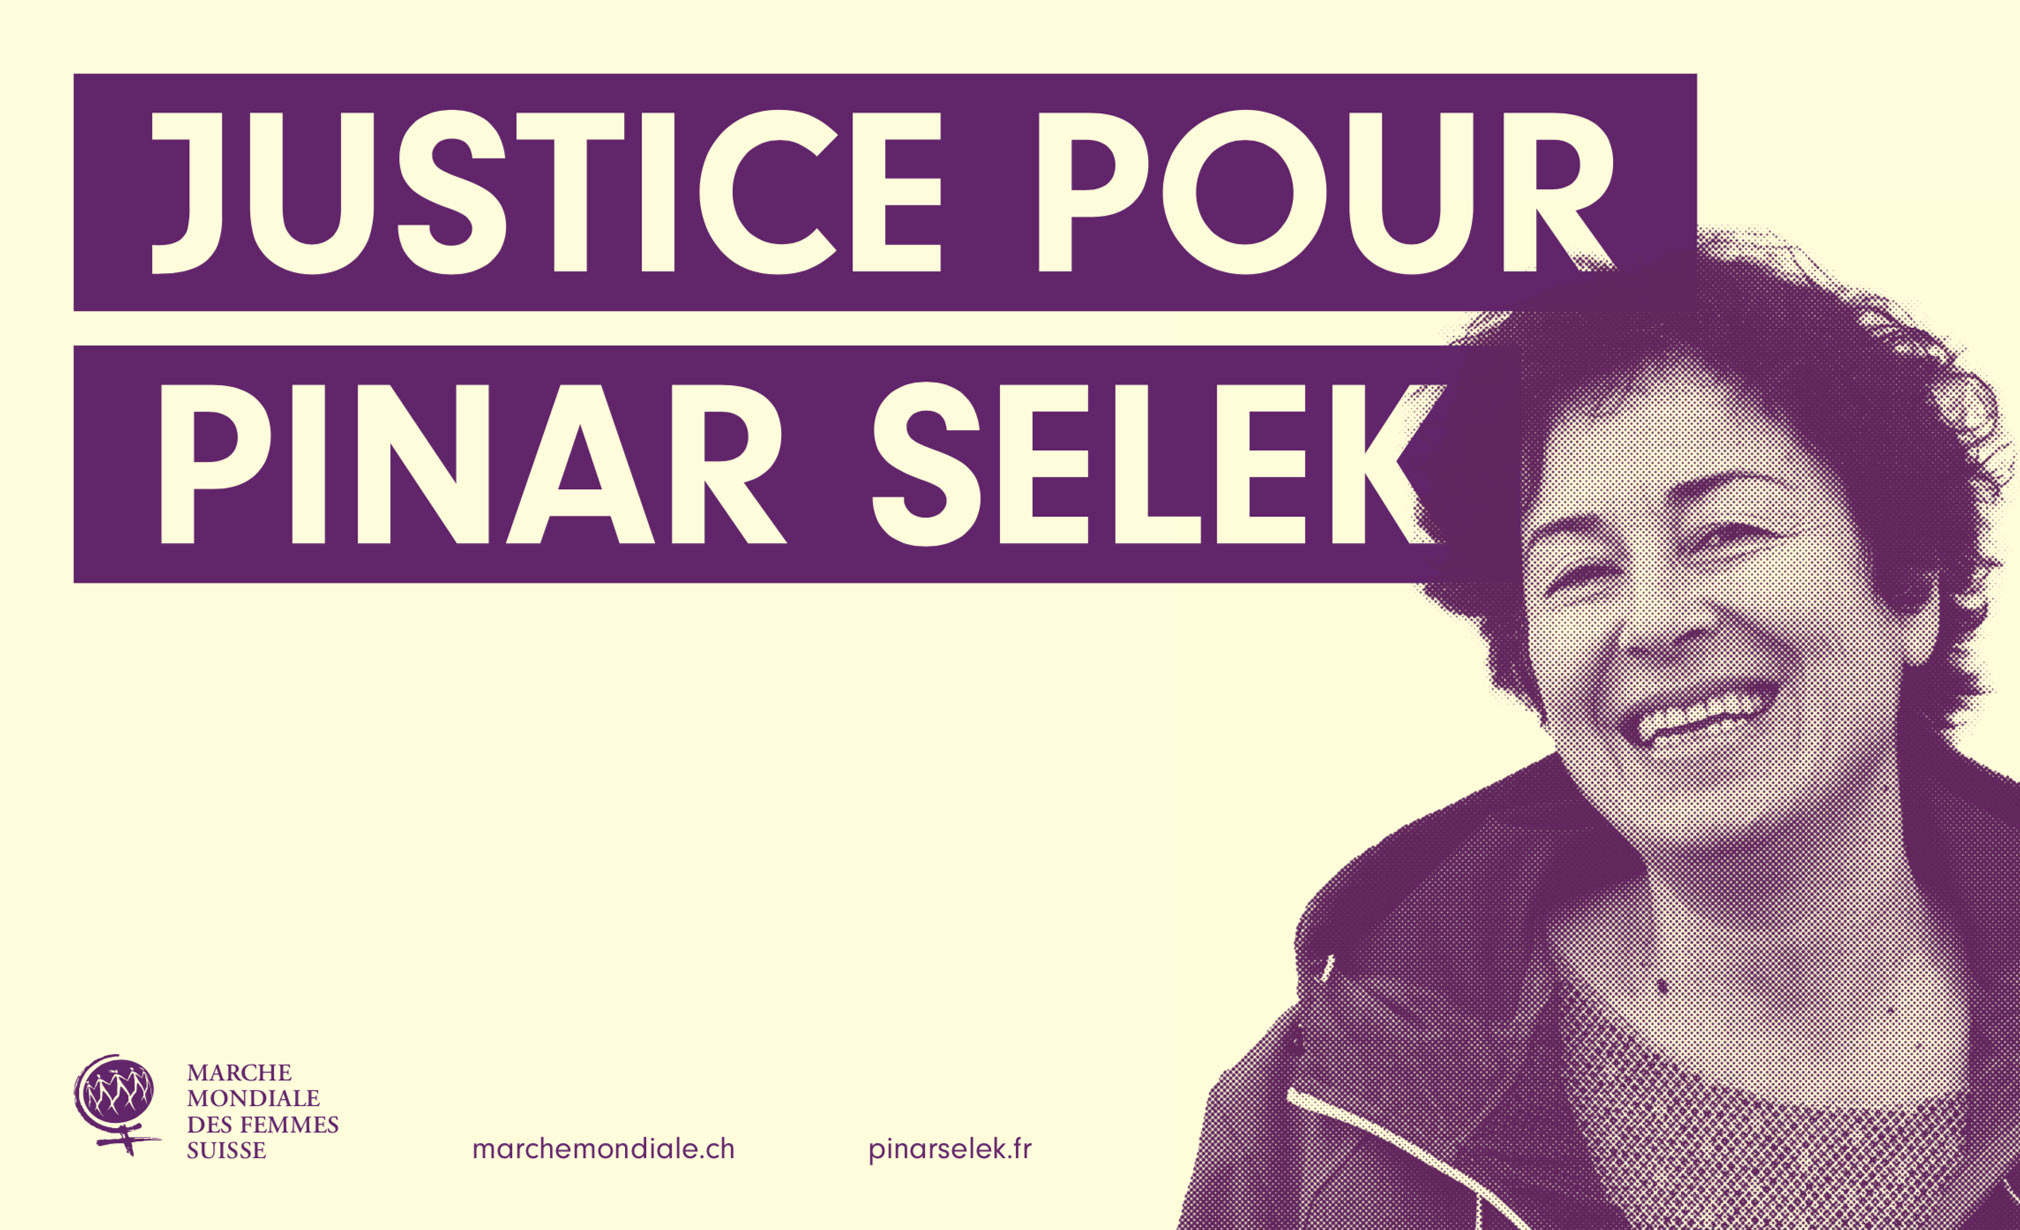 Justice for Pinar Senek